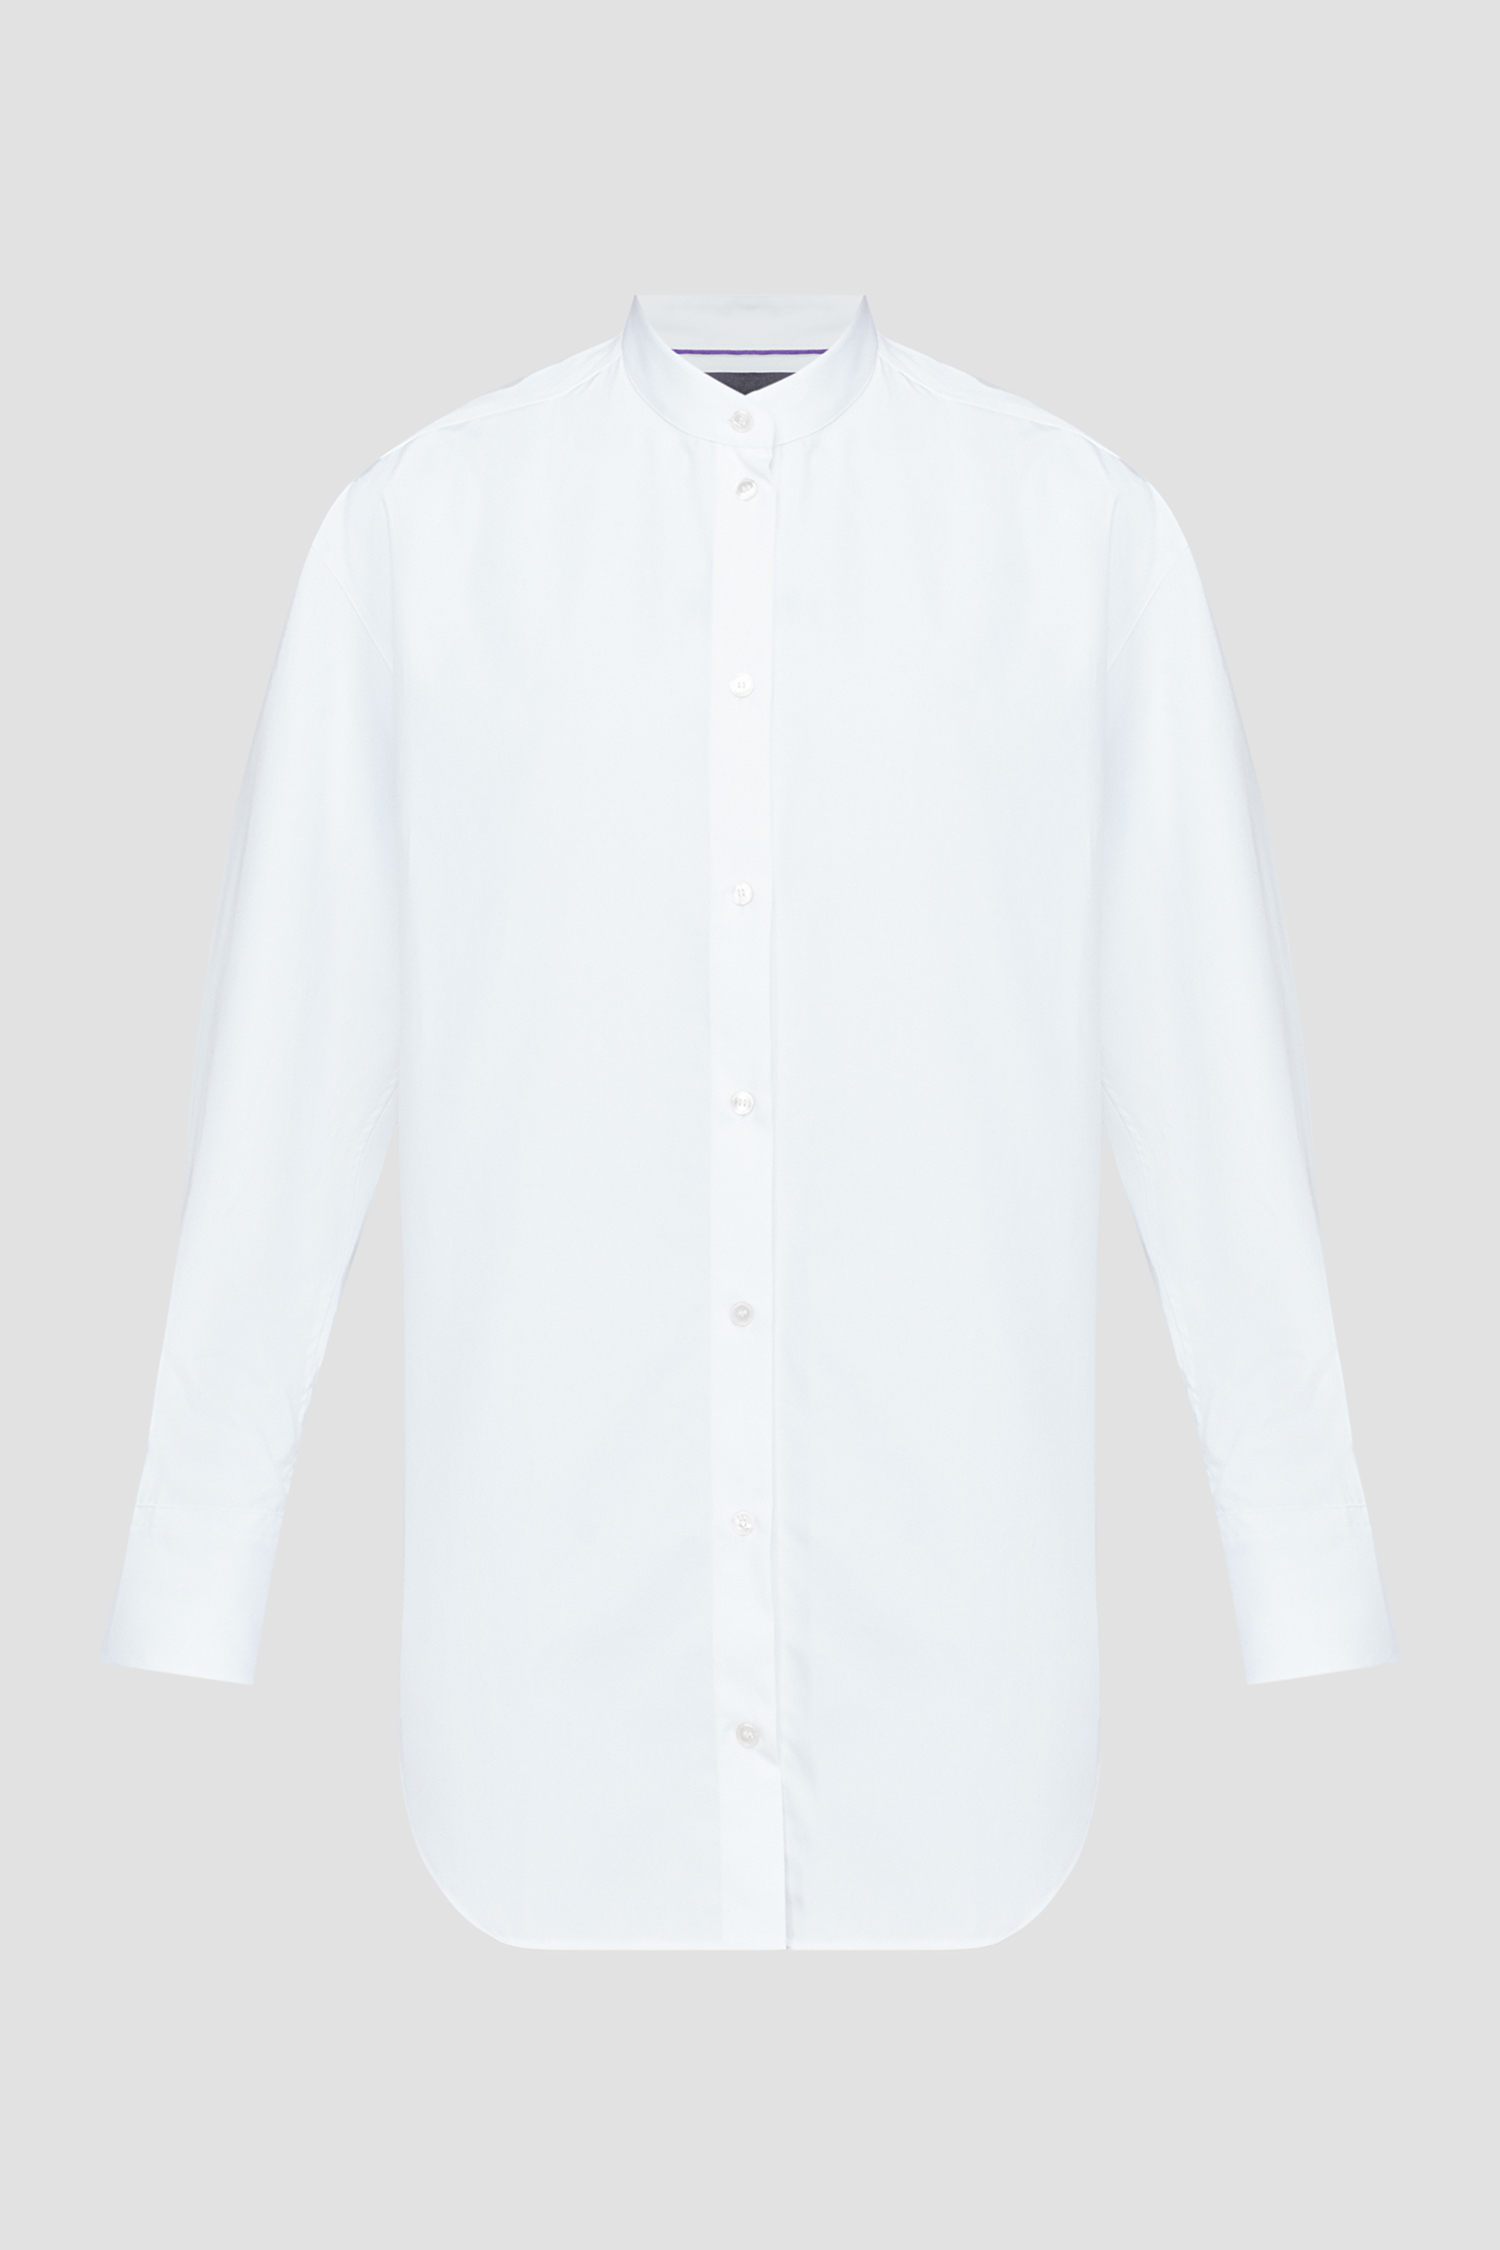 Жіноча біла блуза 1